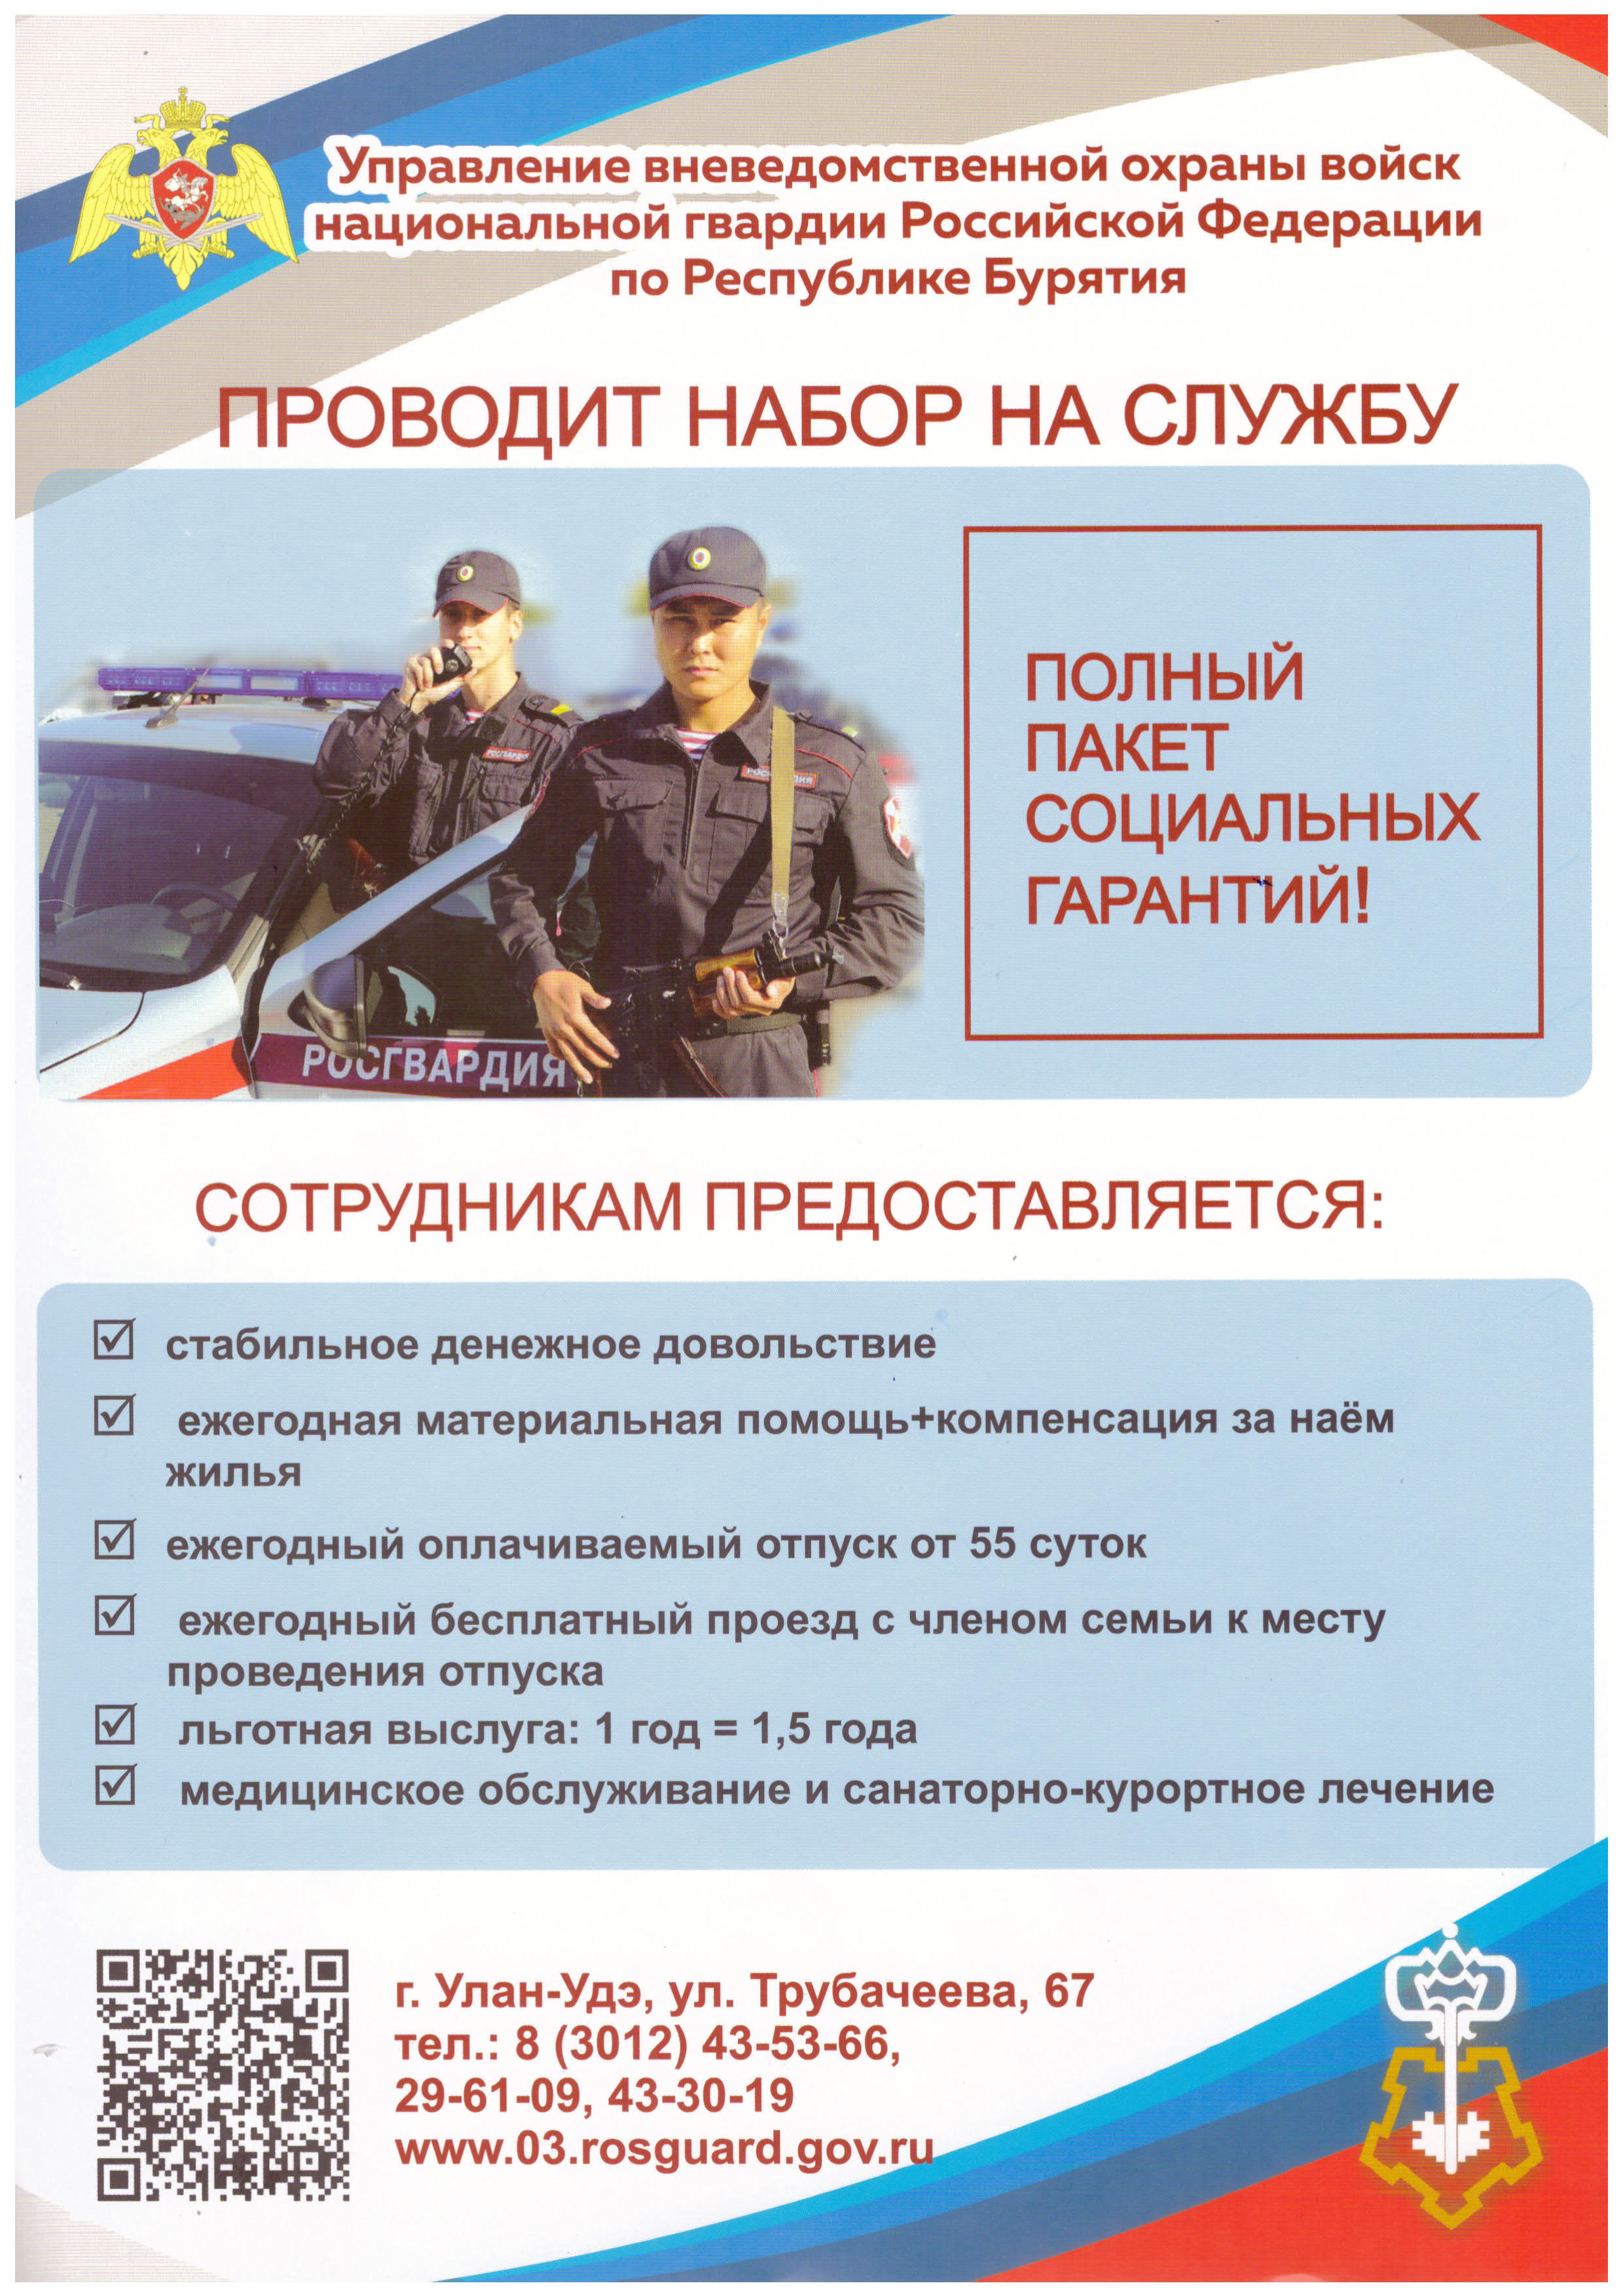 Управление вневедомственной охраны войск национальной гвардии Российской Федерации по Республике Бурятия.